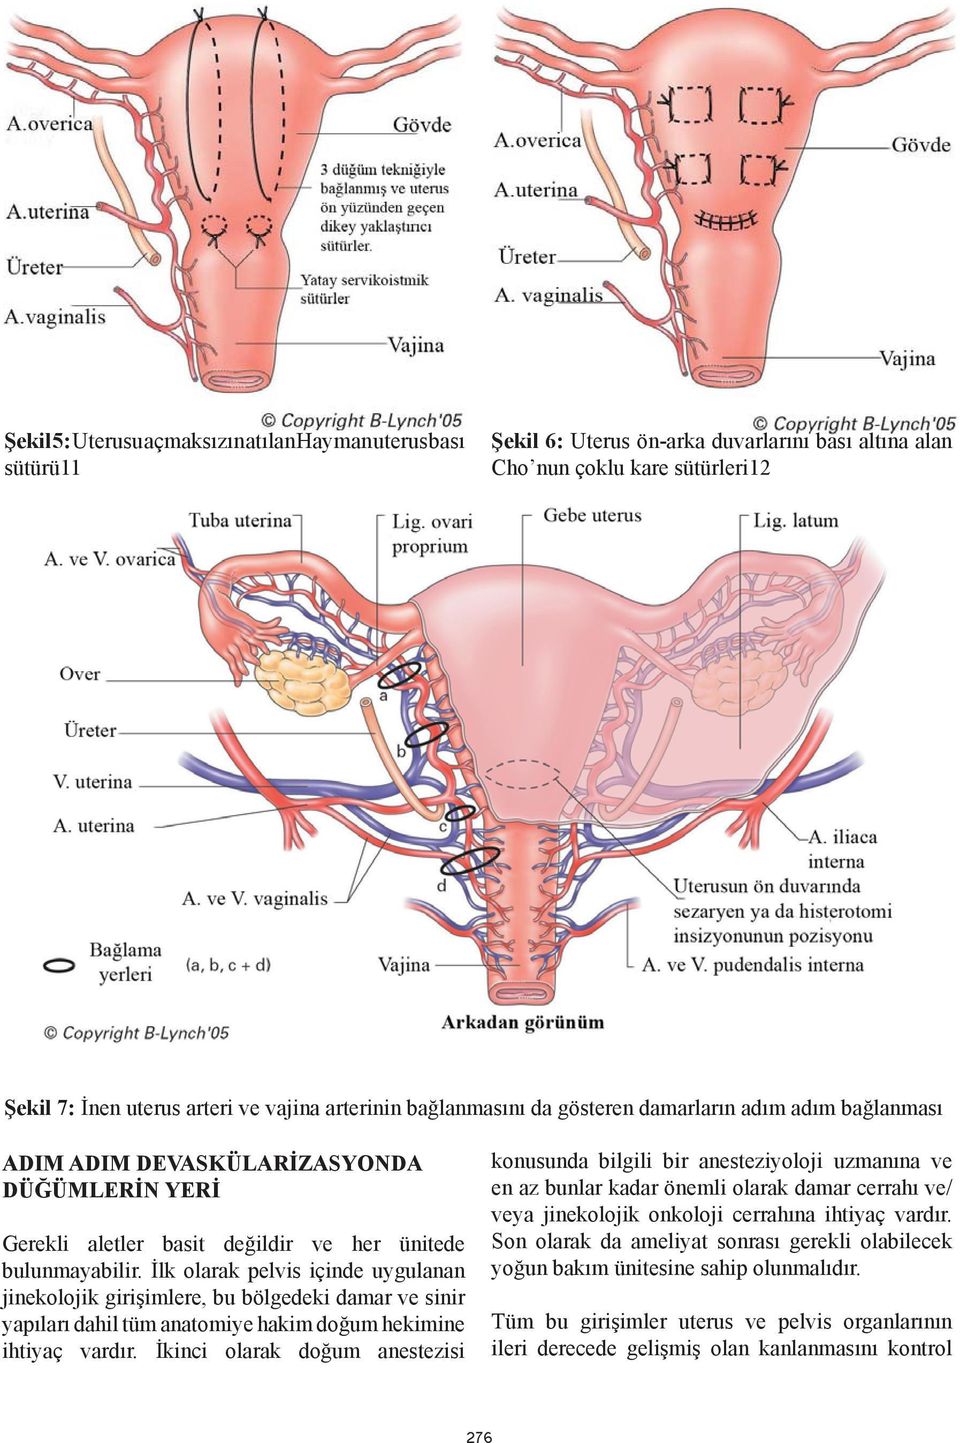 İlk olarak pelvis içinde uygulanan jinekolojik girişimlere, bu bölgedeki damar ve sinir yapıları dahil tüm anatomiye hakim doğum hekimine ihtiyaç vardır.